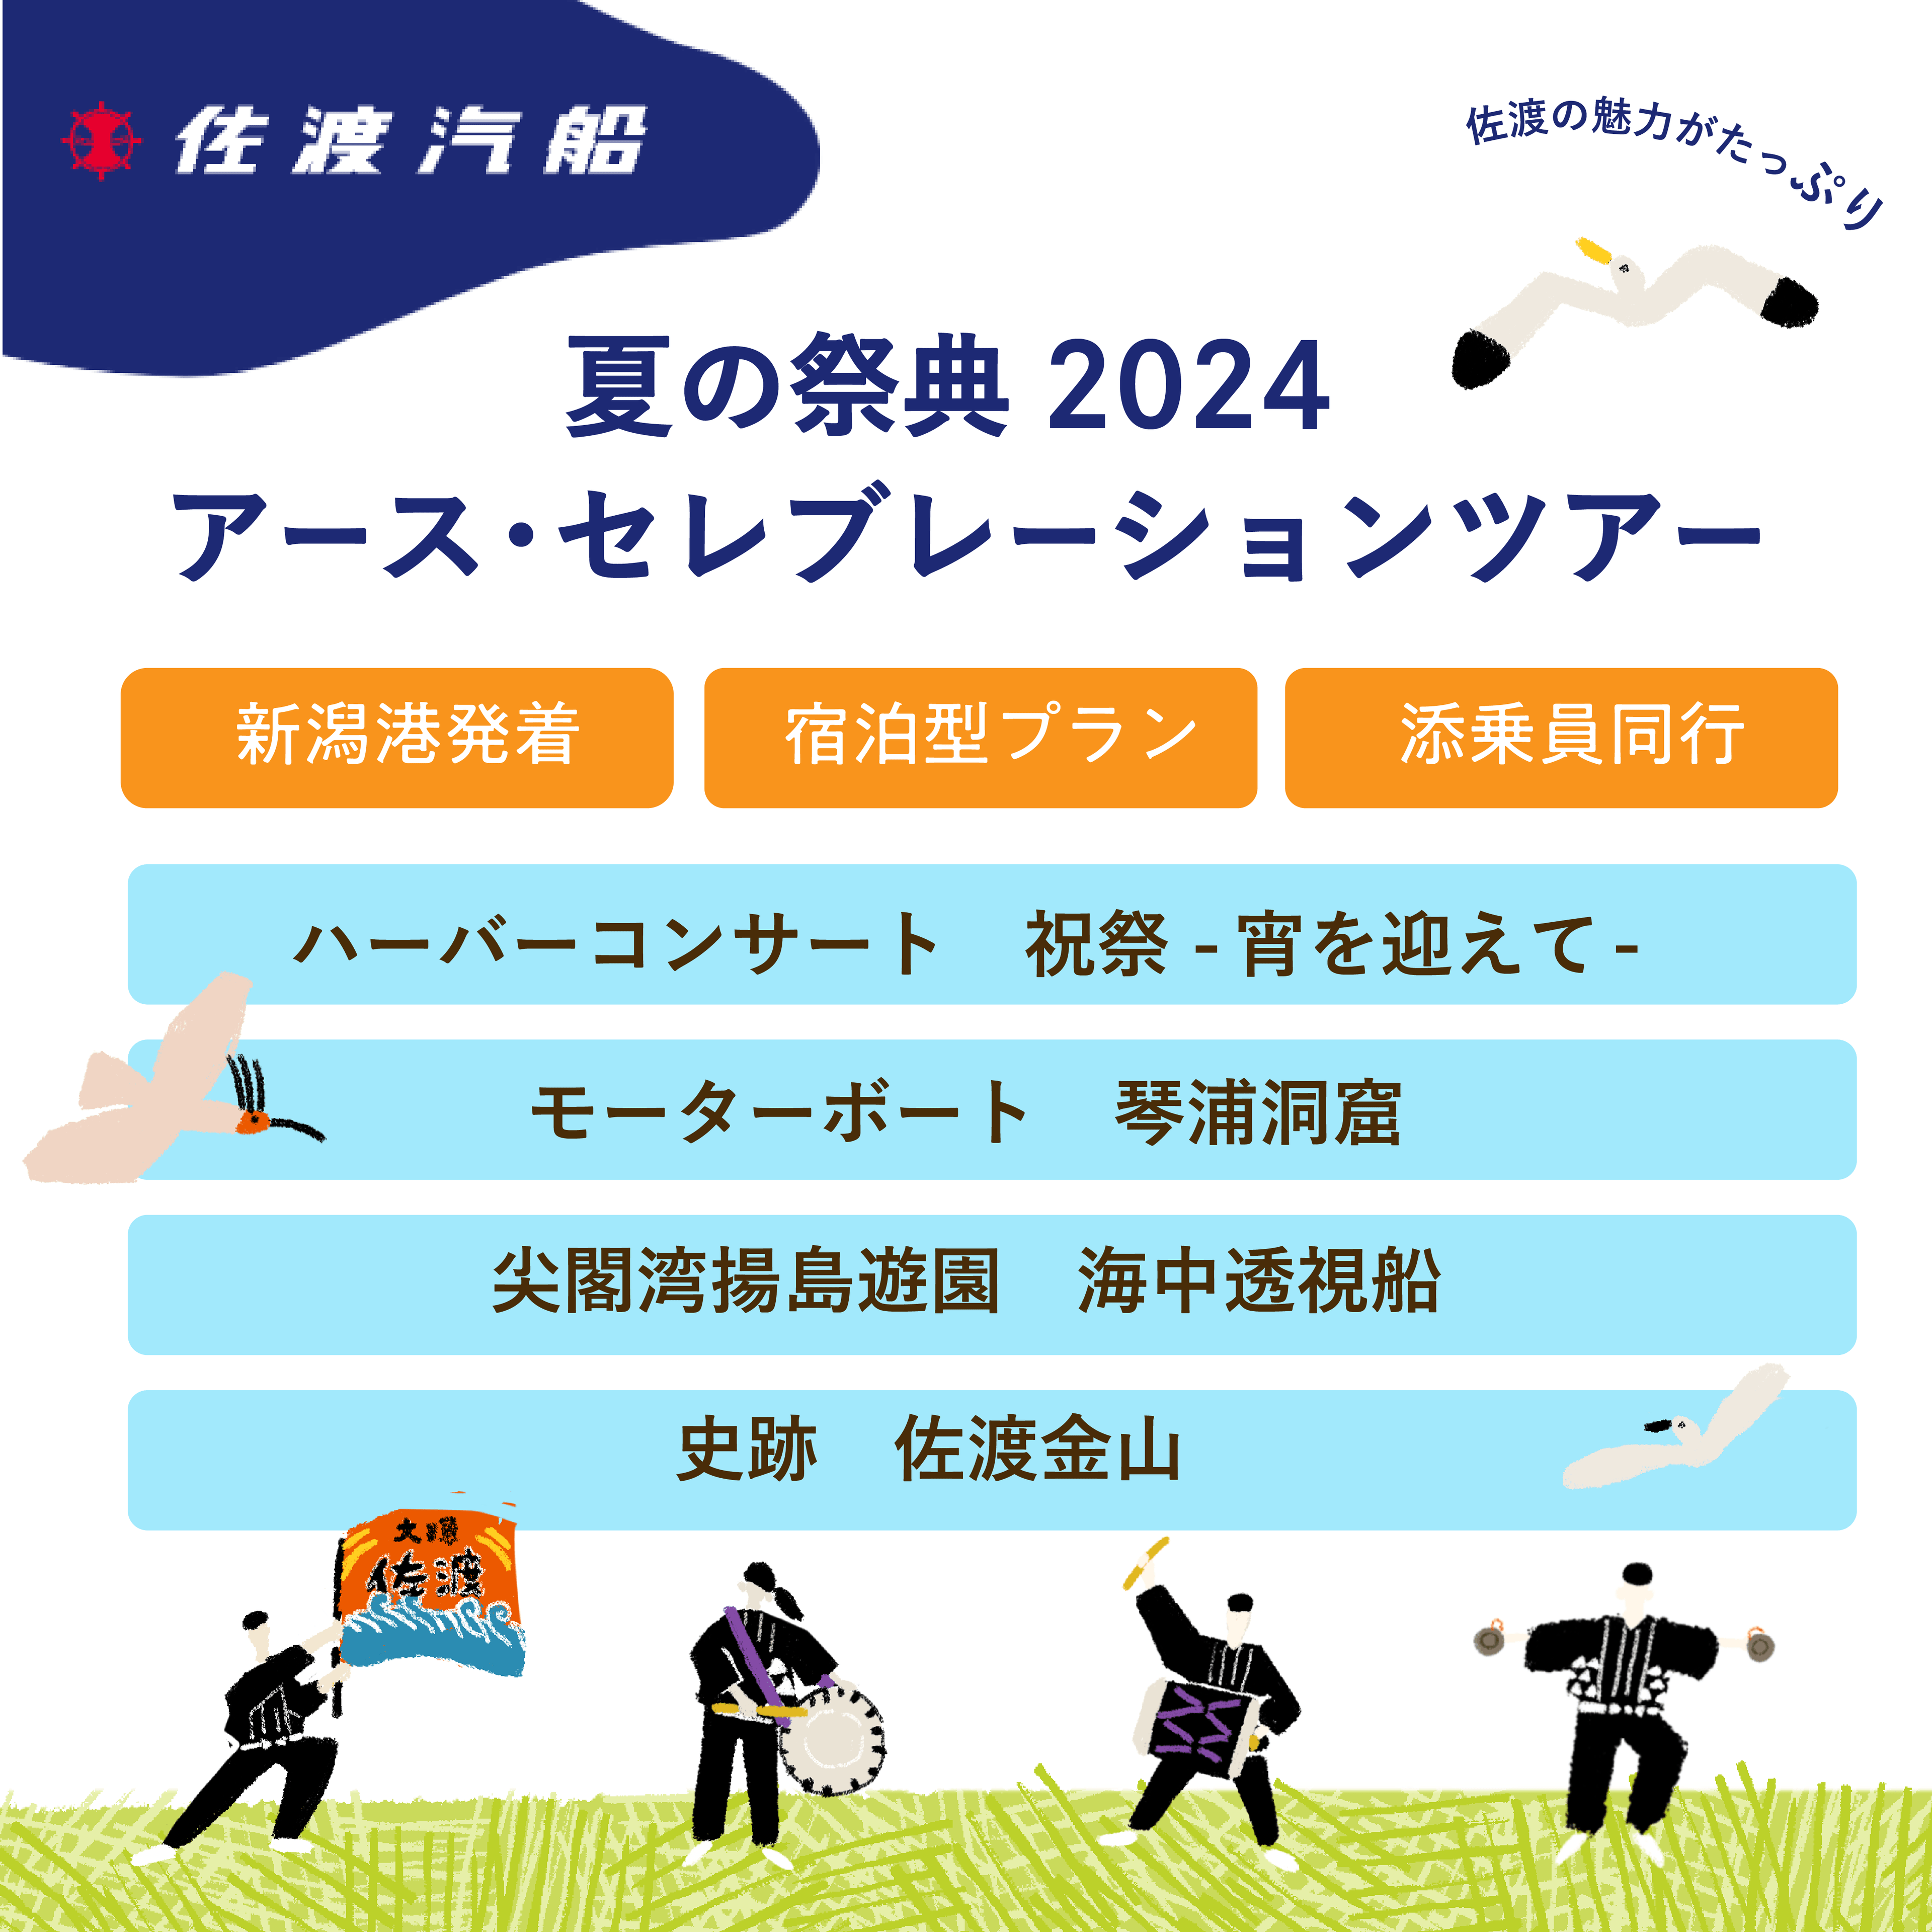 佐渡汽船 【夏の祭典2024アースセレブレーションツアー】のお知らせ